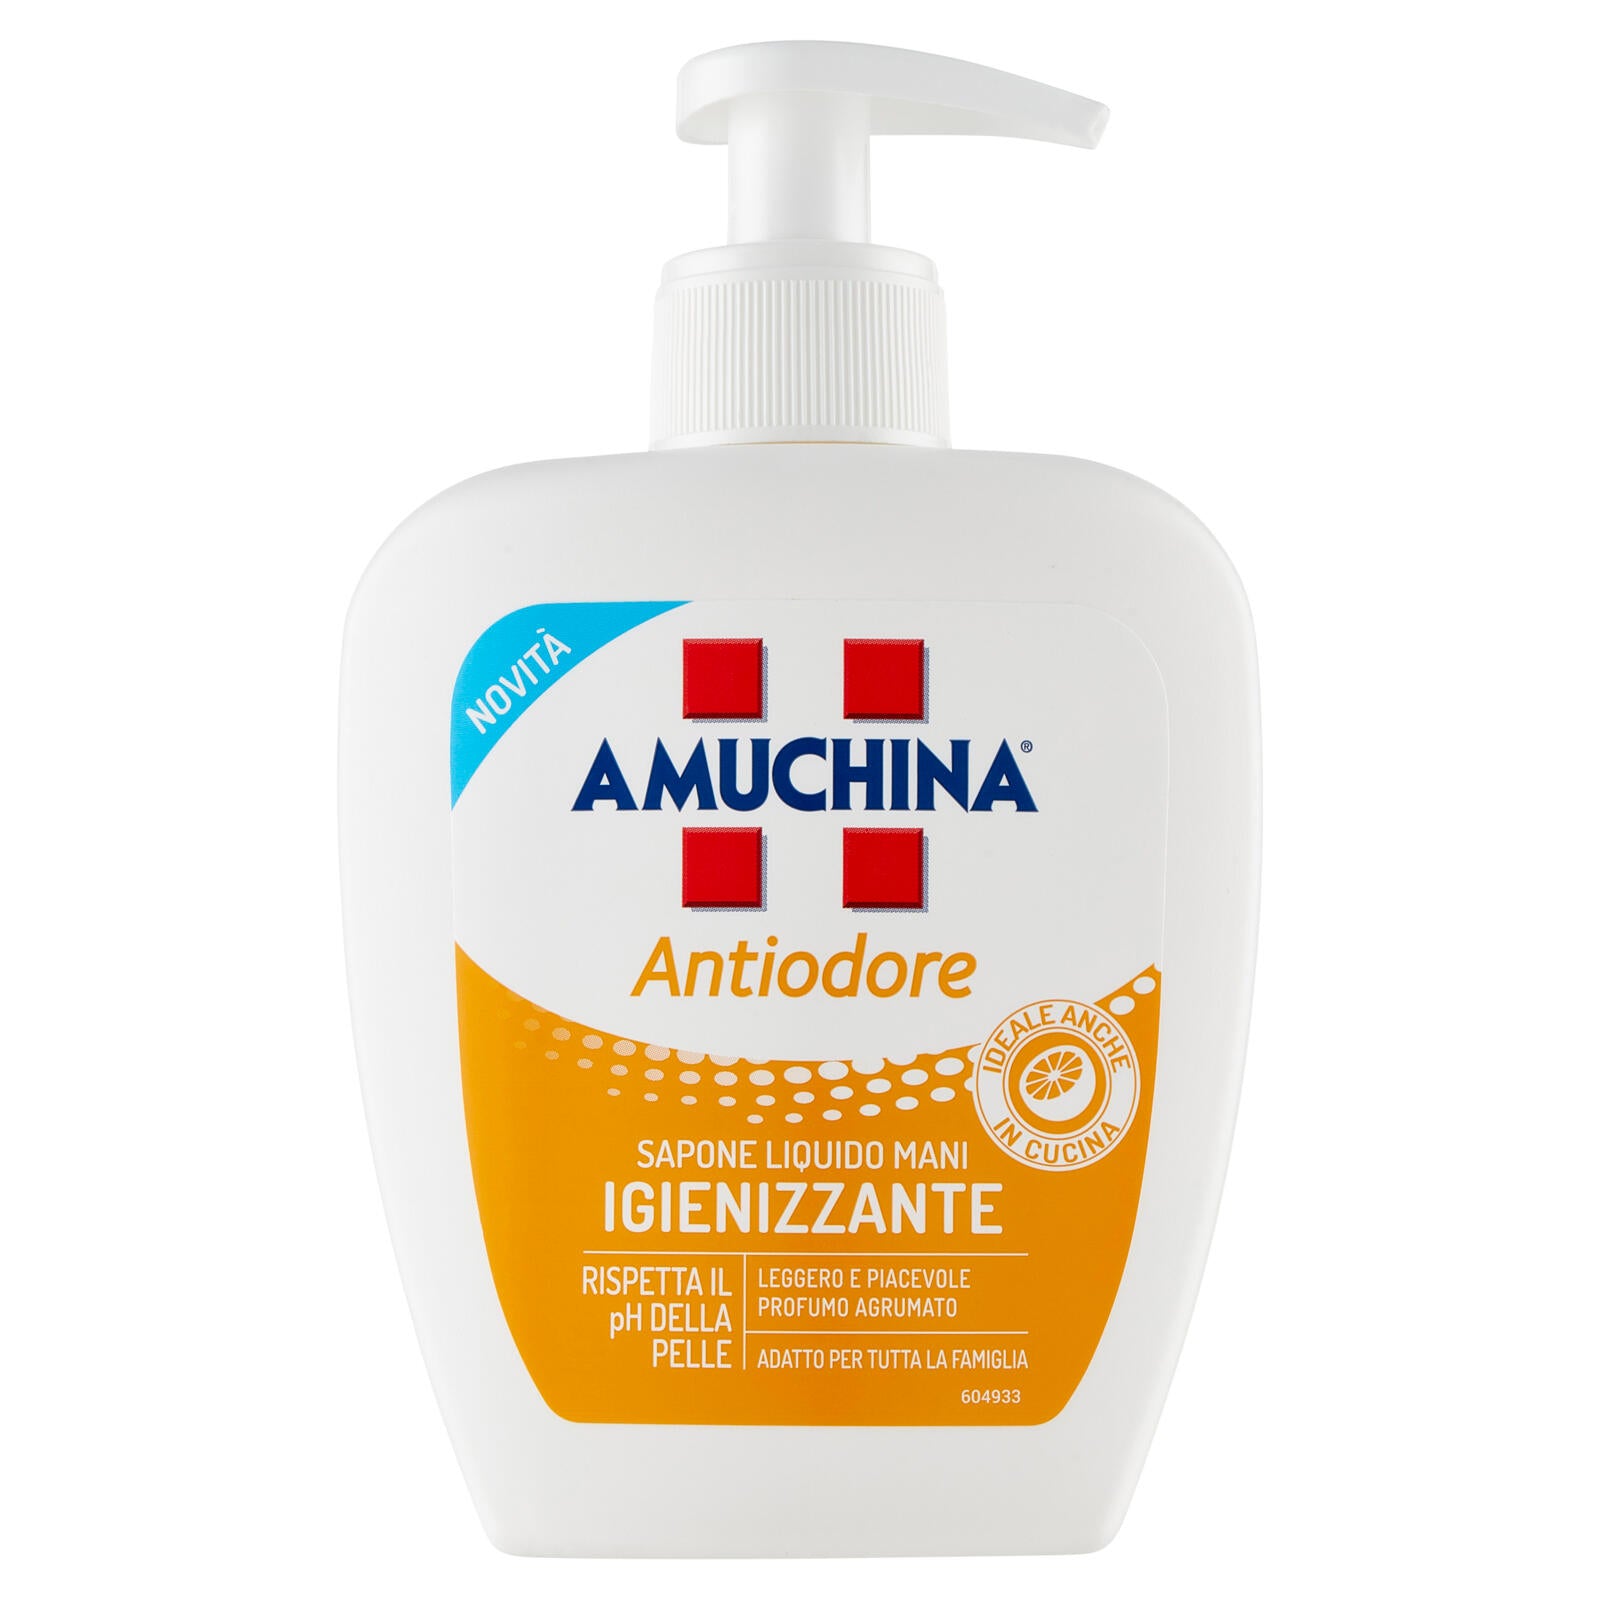 Amuchina Antiodore Sapone Liquido Mani Igienizzante 250 ml ->